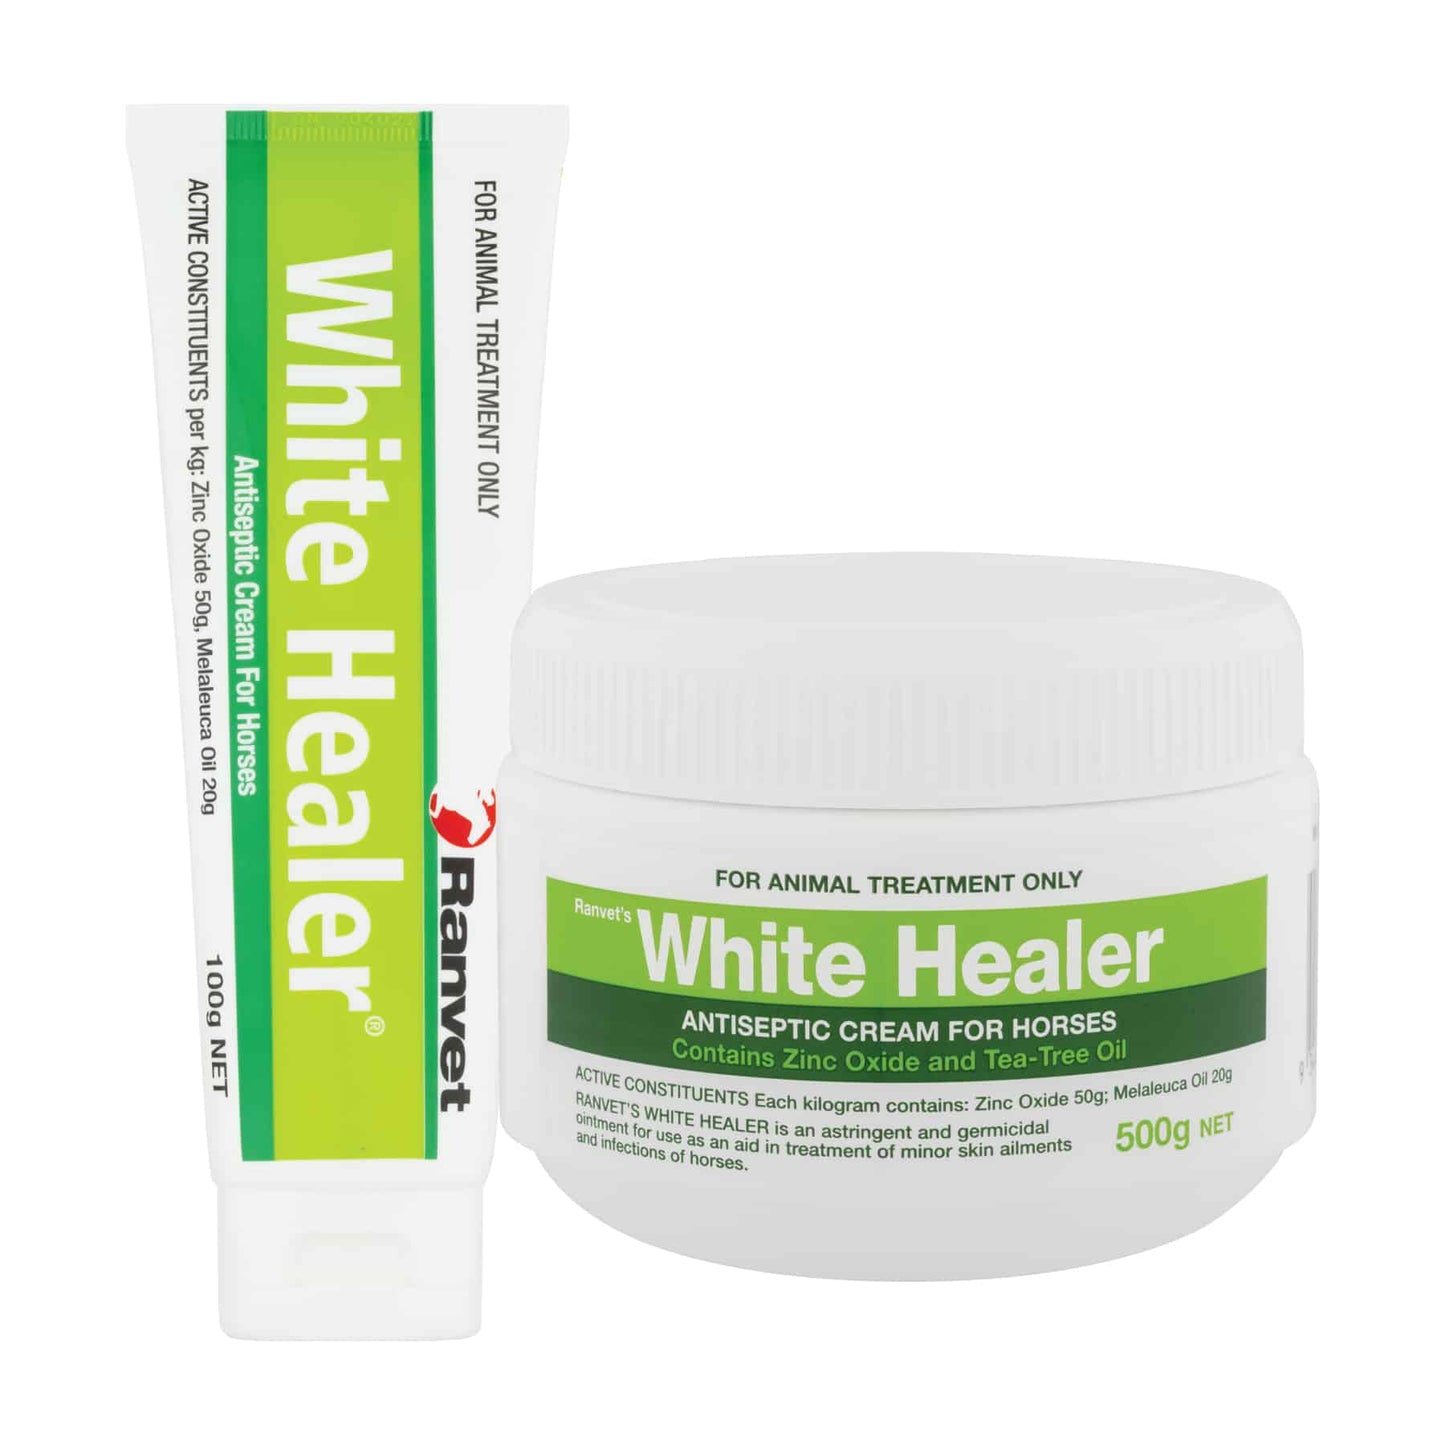 White Healer